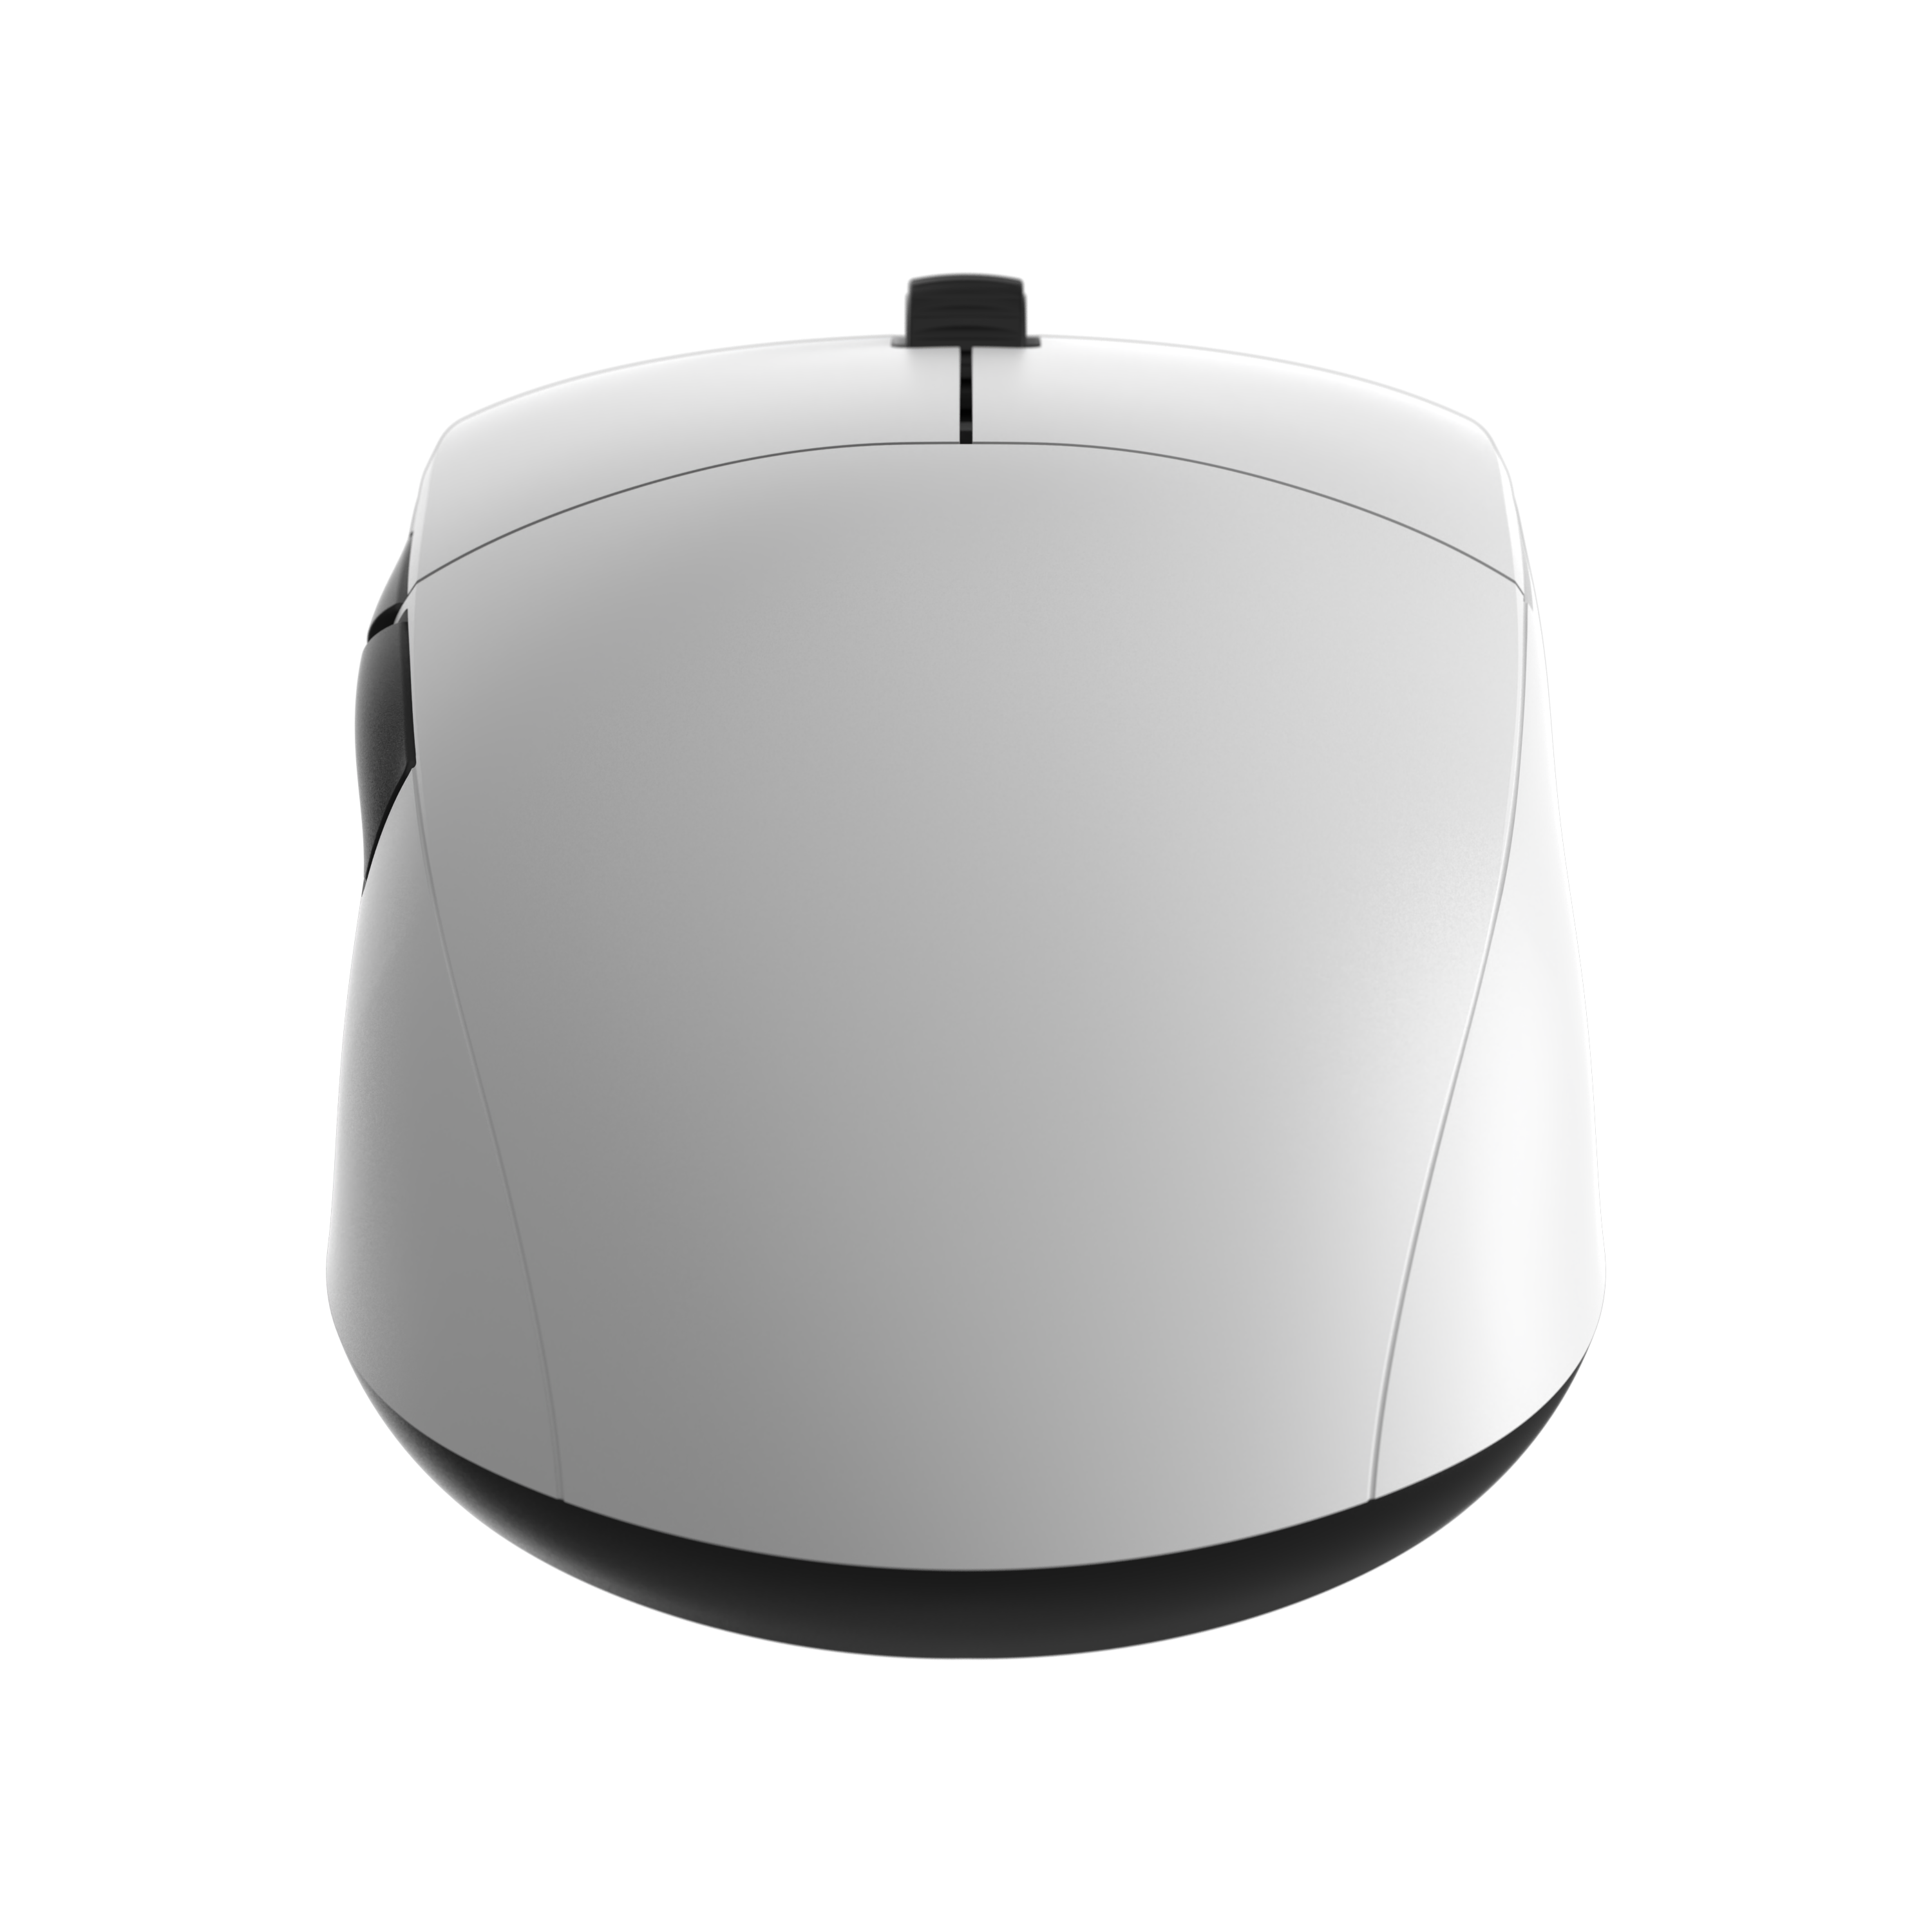 endgame-gear - XM2w Wireless Gaming Mouse - White